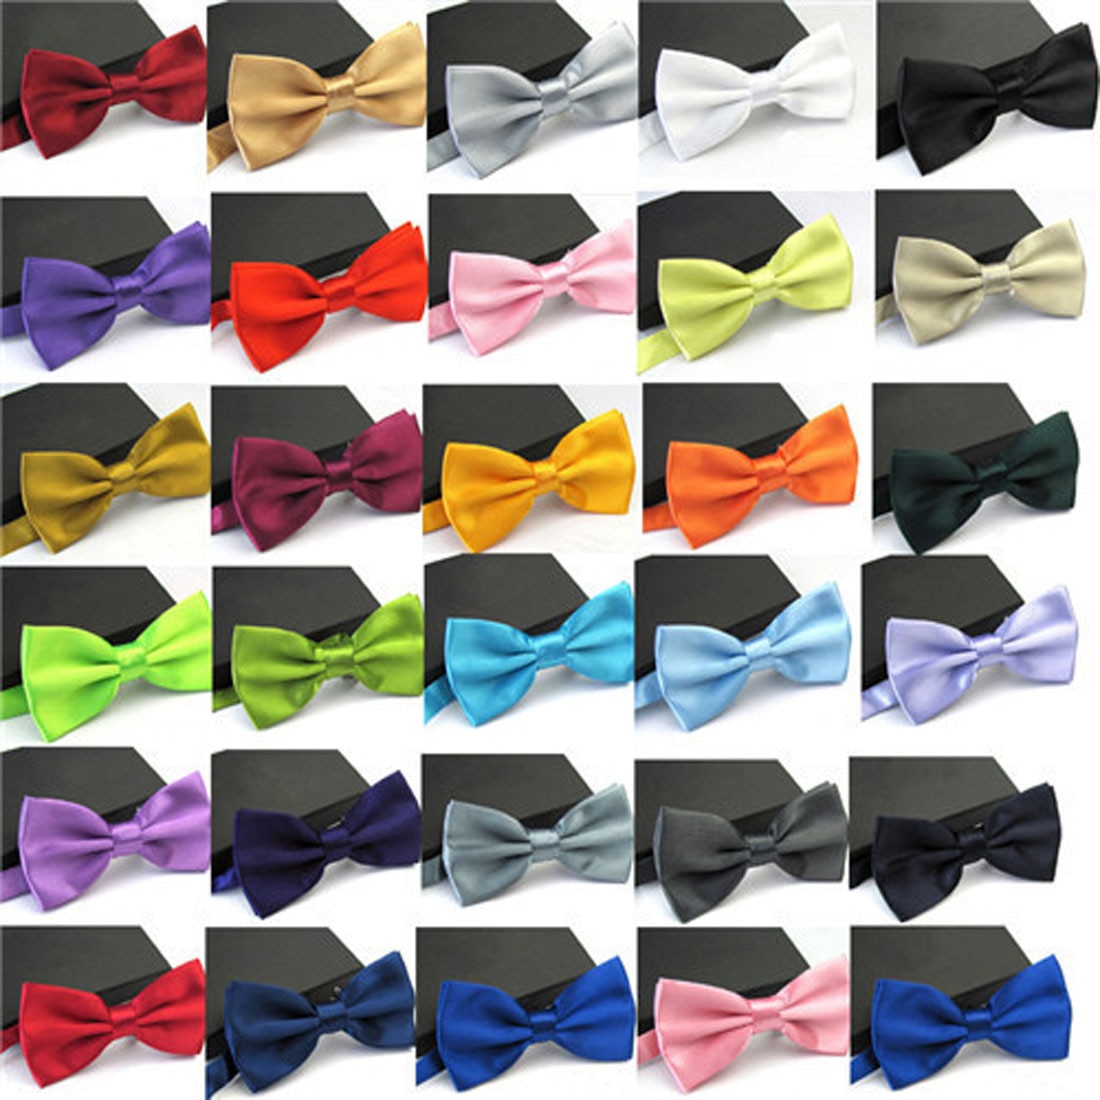 Corbata de esmoquin clásica para hombre, pajarita para fiesta de boda, lazo, 30 colores sólidos, venta, 1 unidad